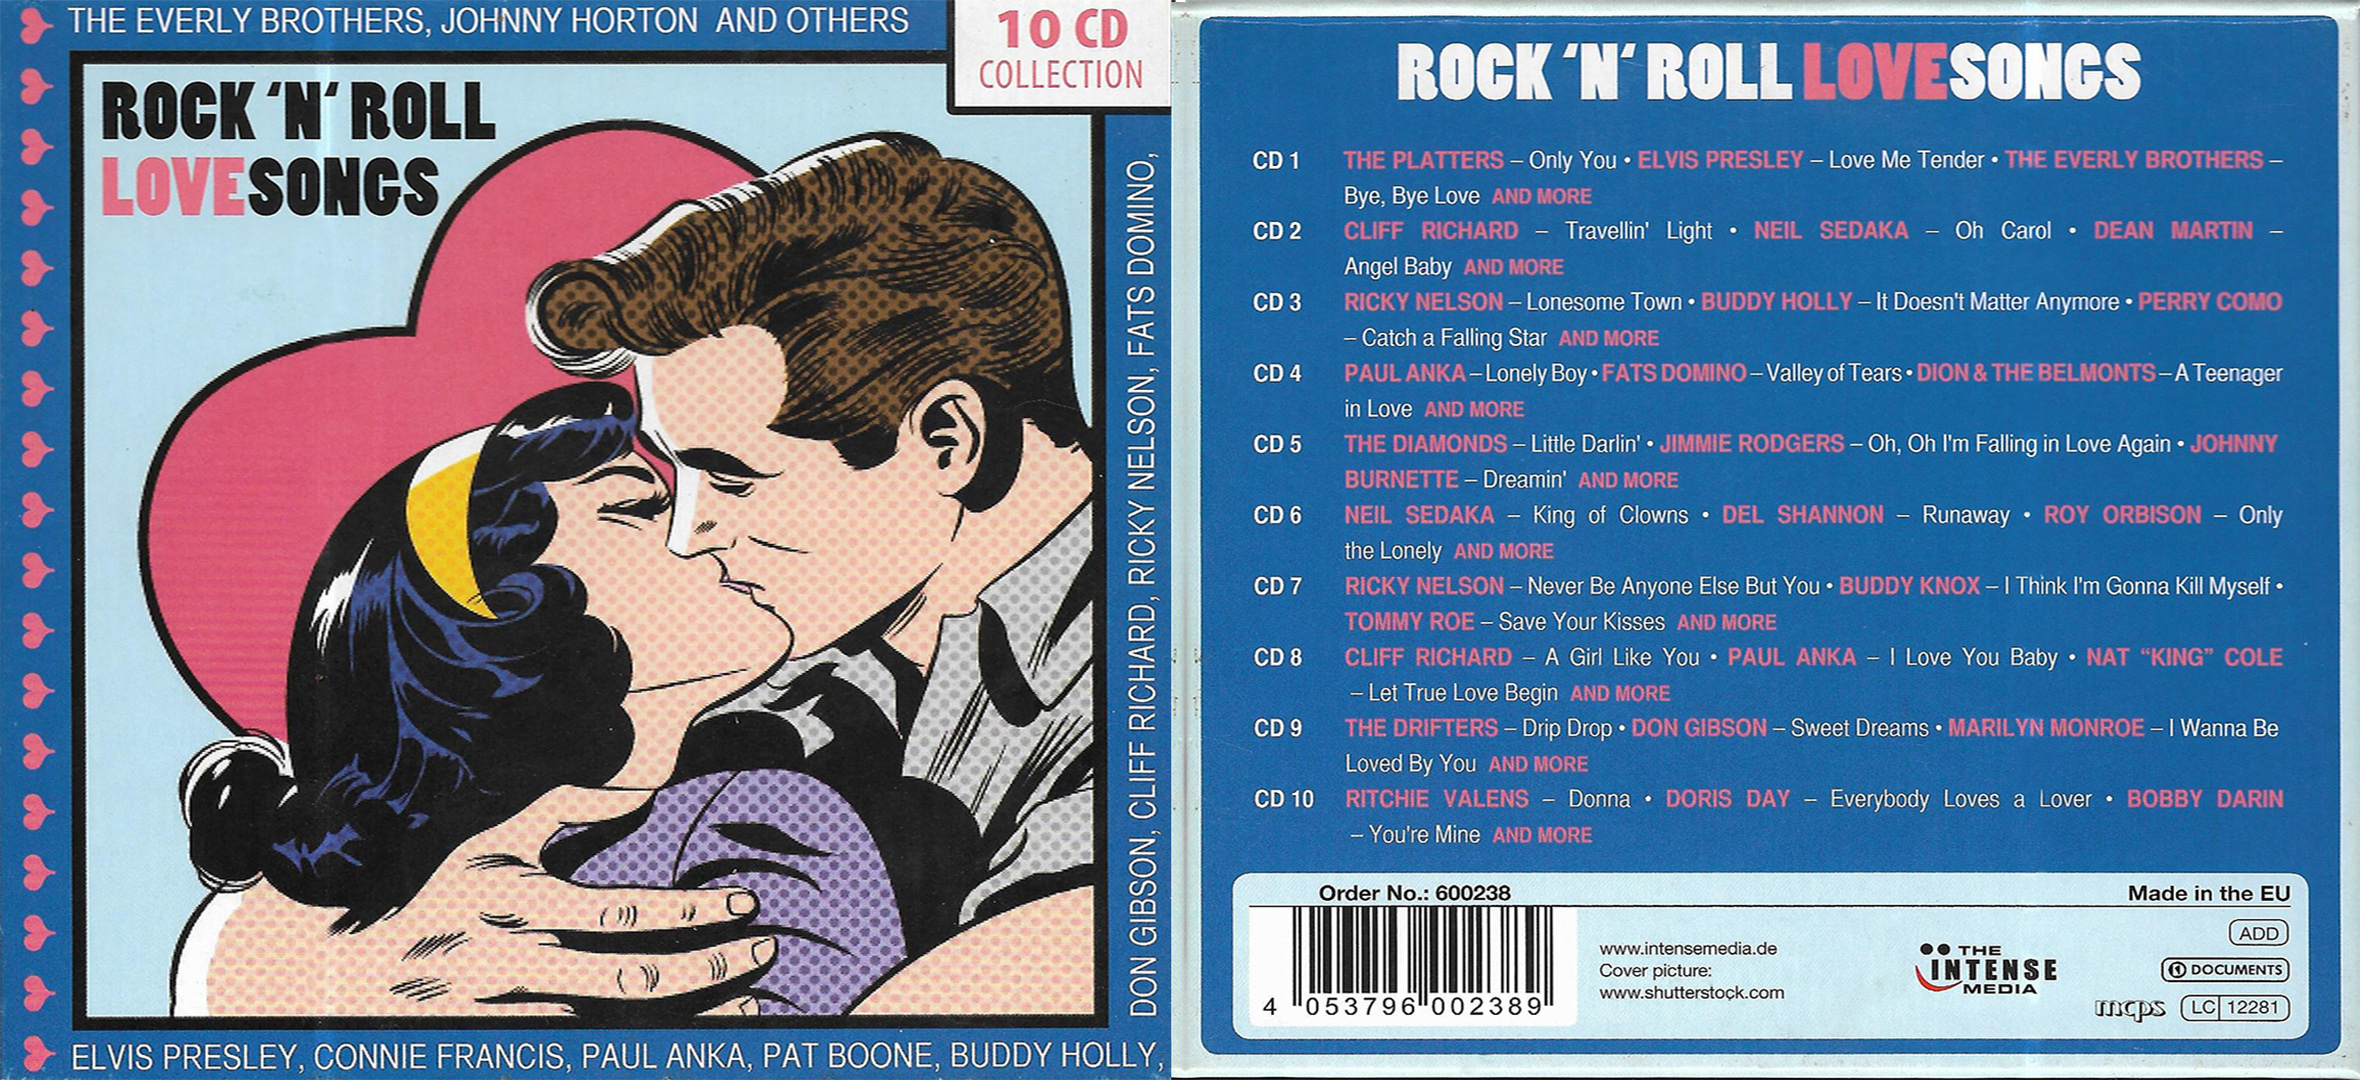 Rock 'n' Roll - Love Songs (10 CD's)